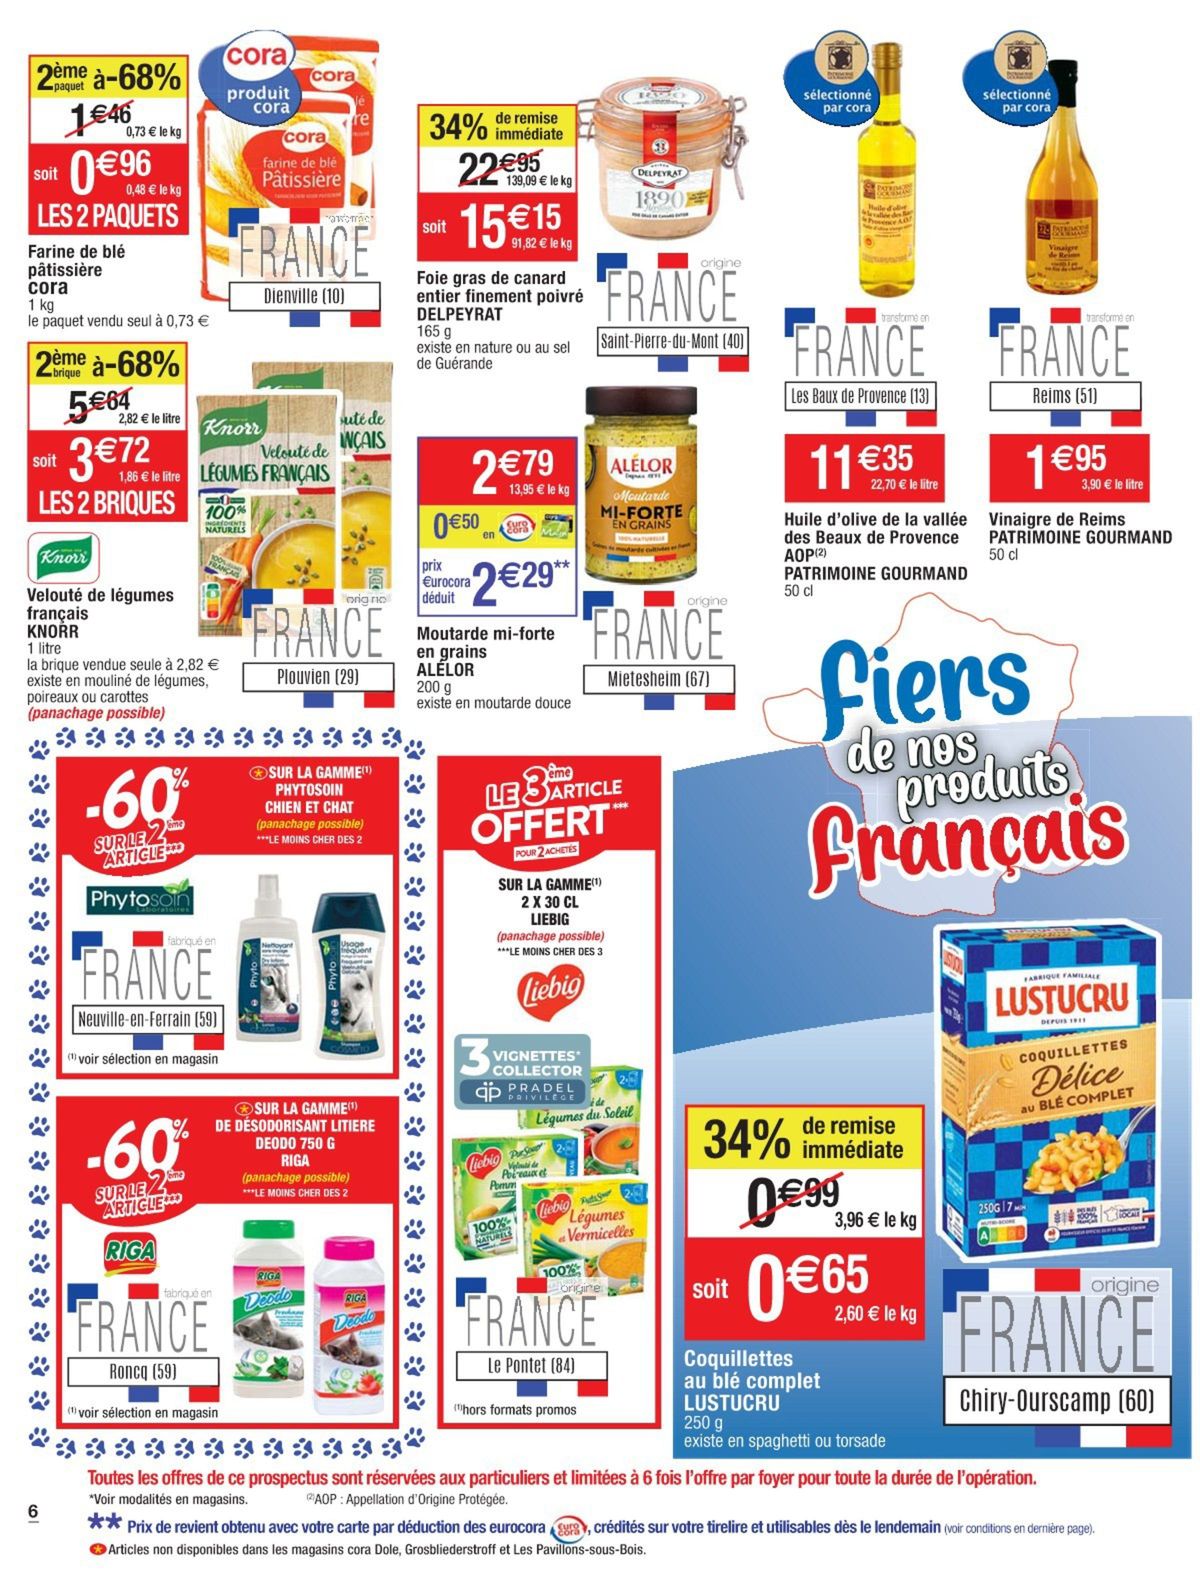 Catalogue Fiers de nos produits français, page 00032